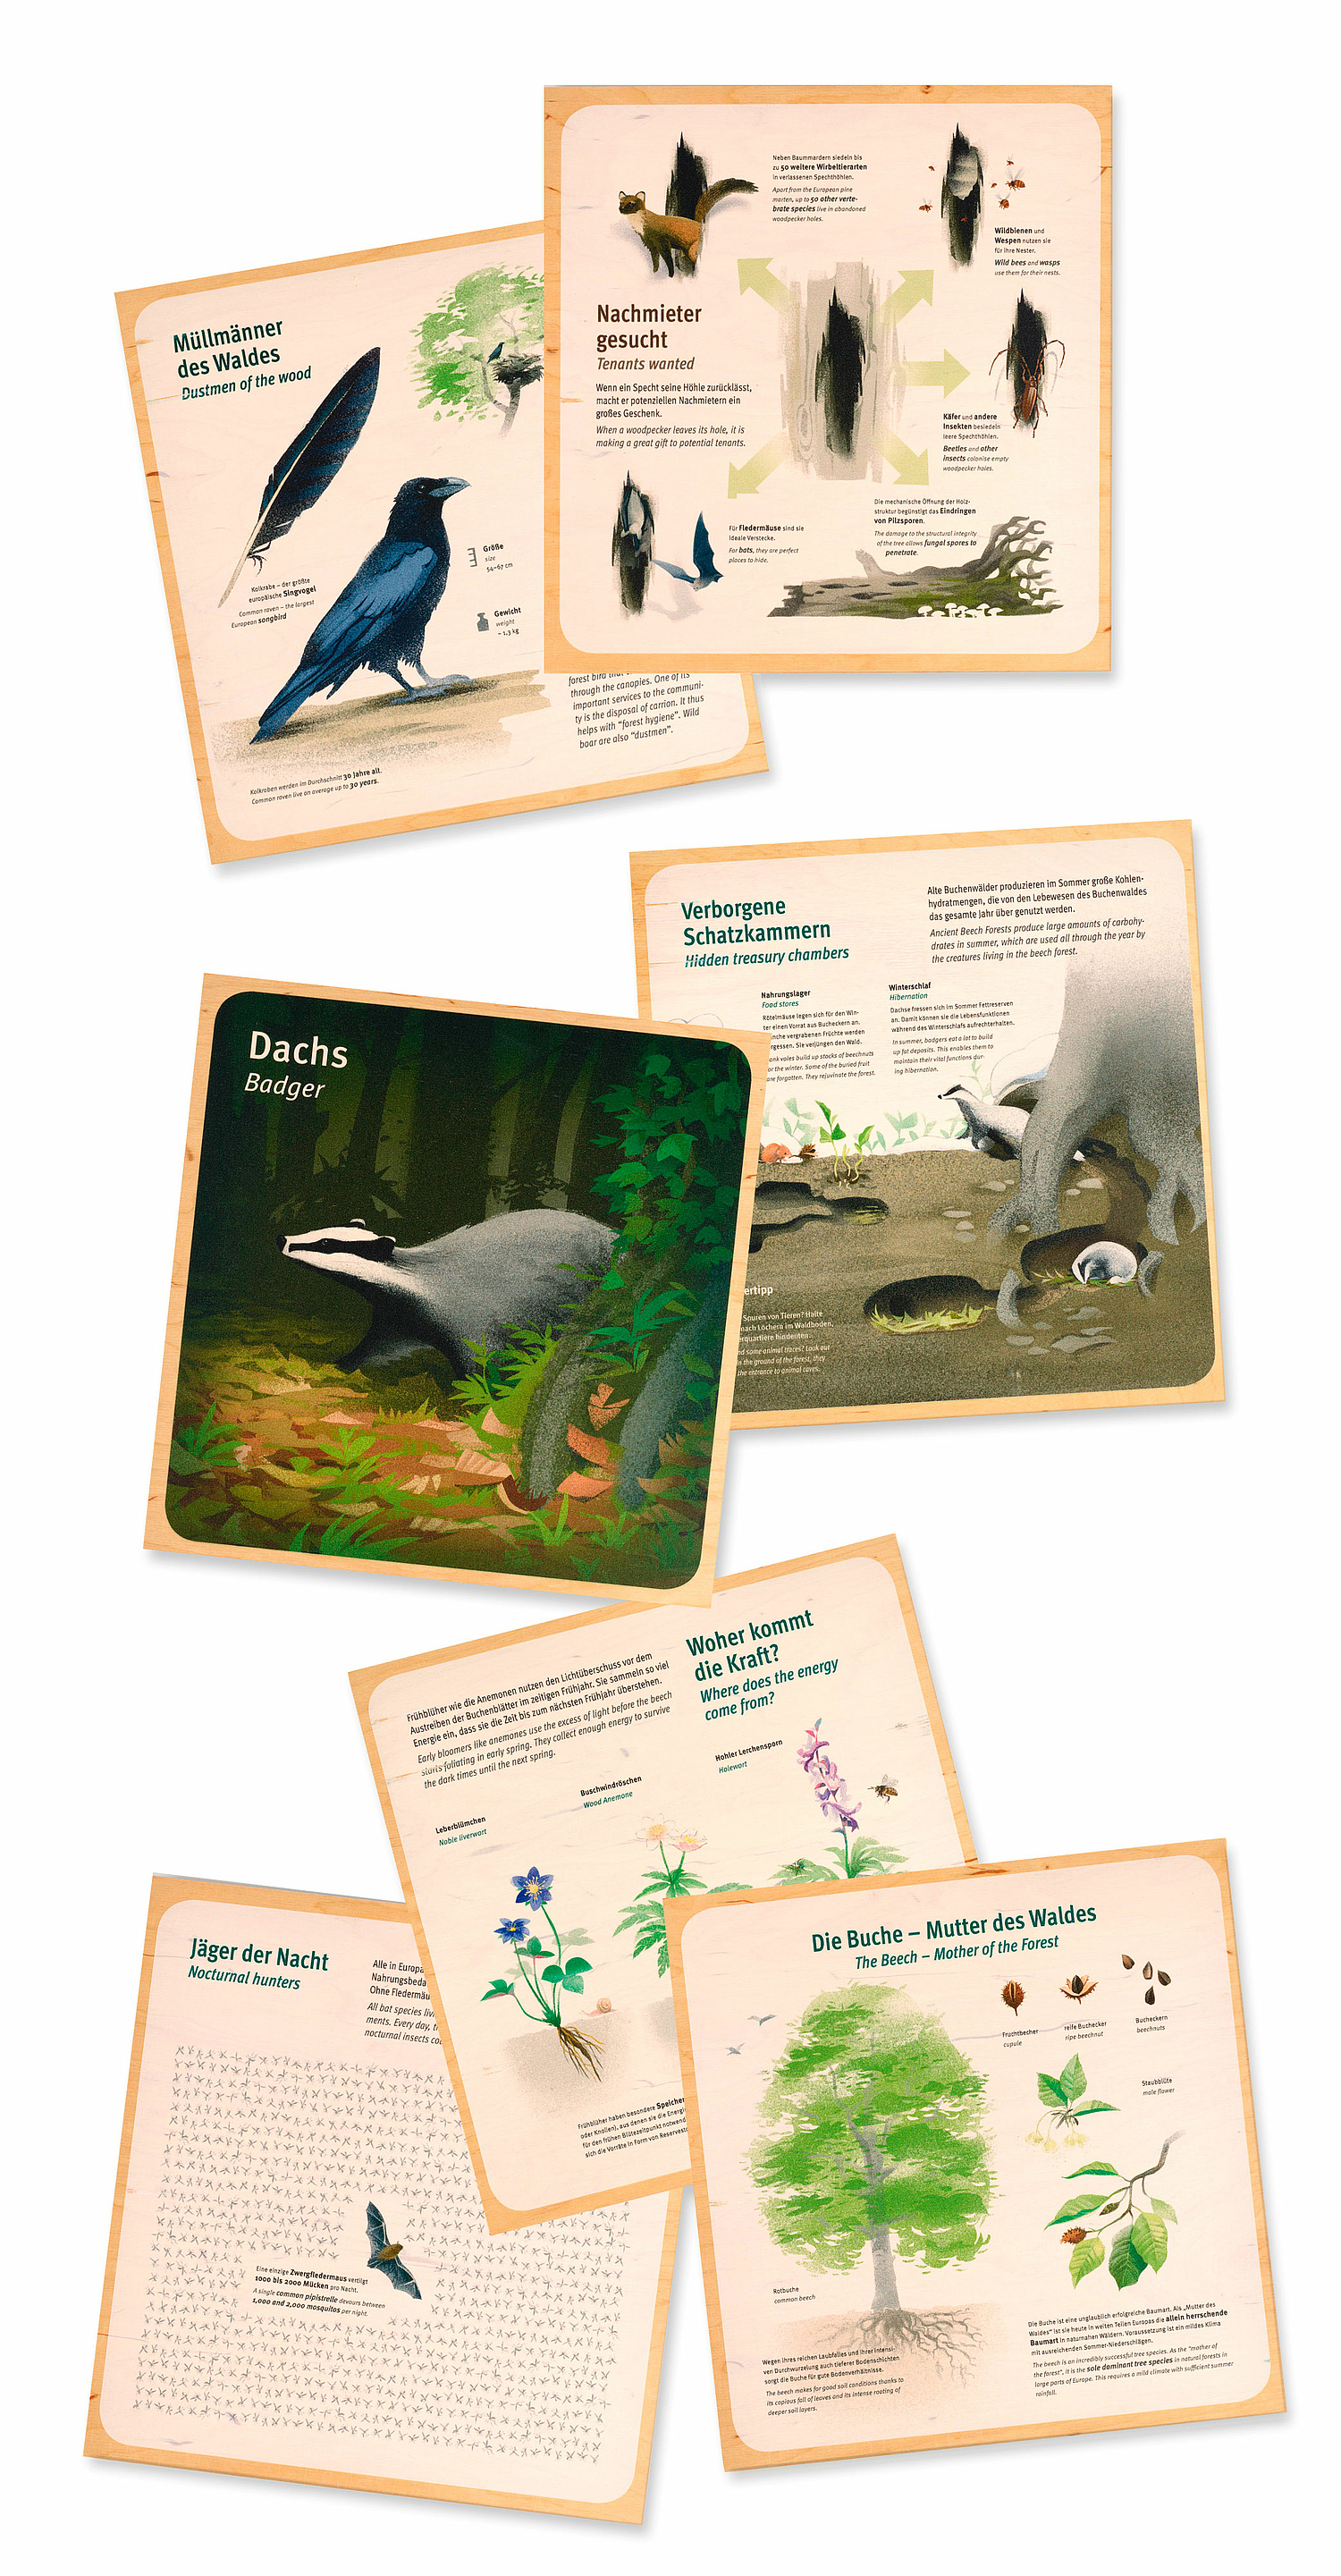 Das Bild zeigt eine Auswahl von Informationenstafeln, die weiterführende Informationen zu den auf dem großen Wimmelbild dargestellten Arten und Prozessen enthalten. (© Papenfuss | Atelier)